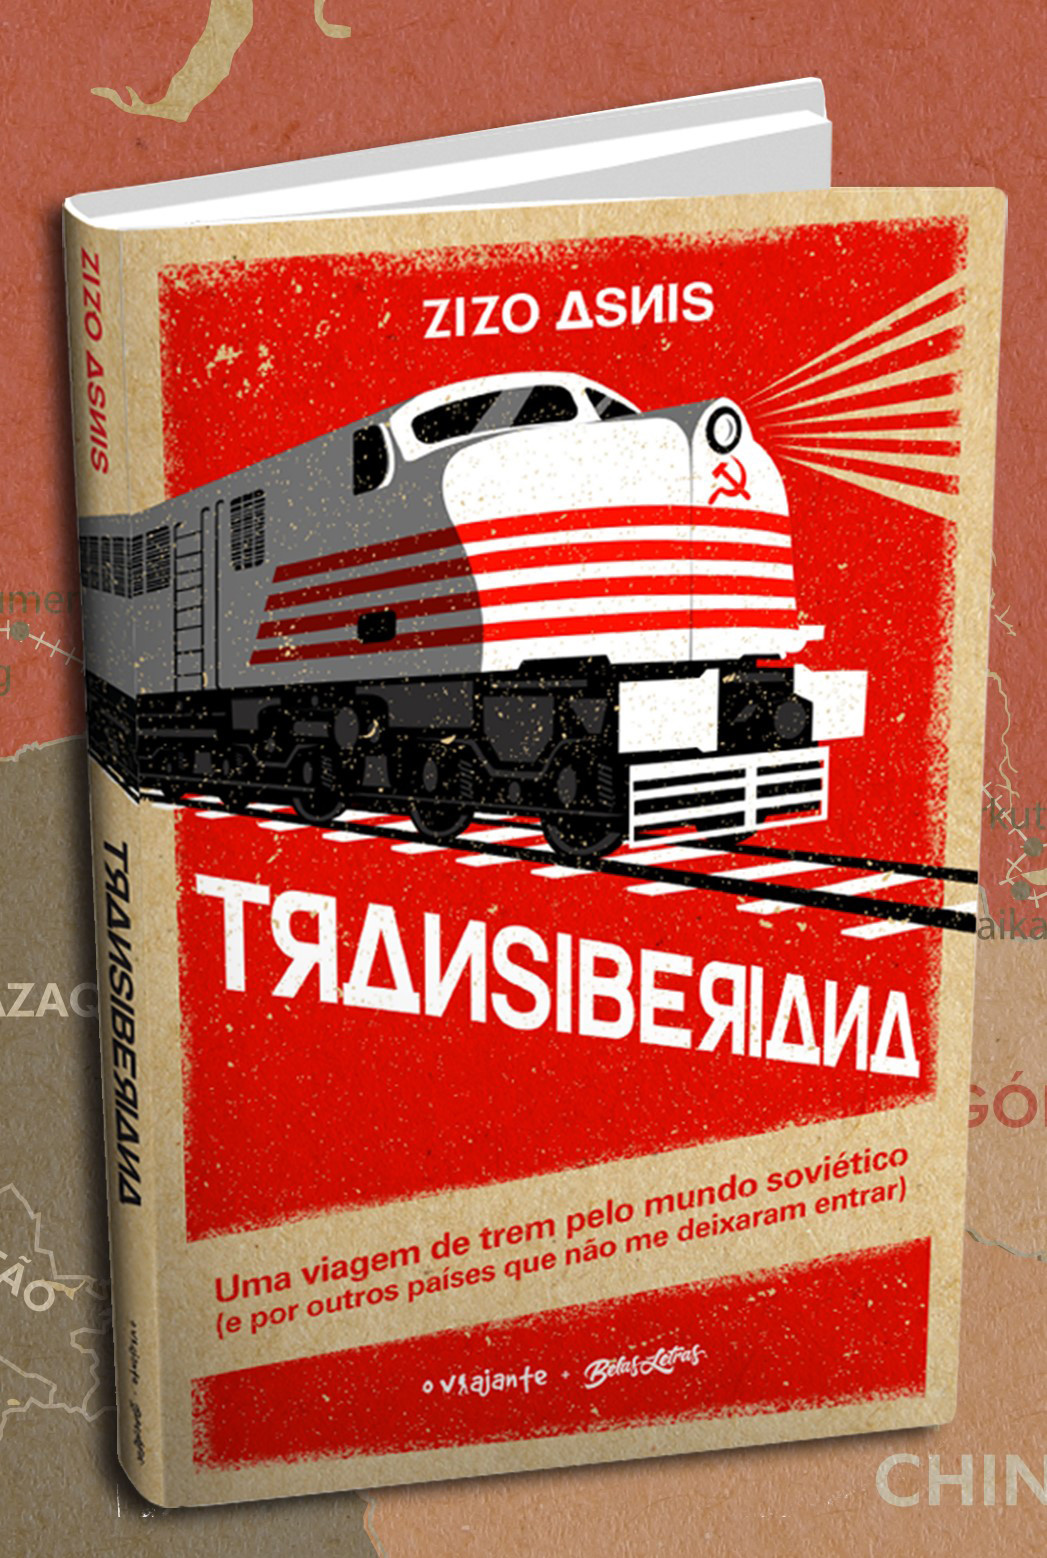 Capa do livro “Transiberiana: uma viagem de trem pelo mundo soviético (e por outros países que não me deixaram entrar)”